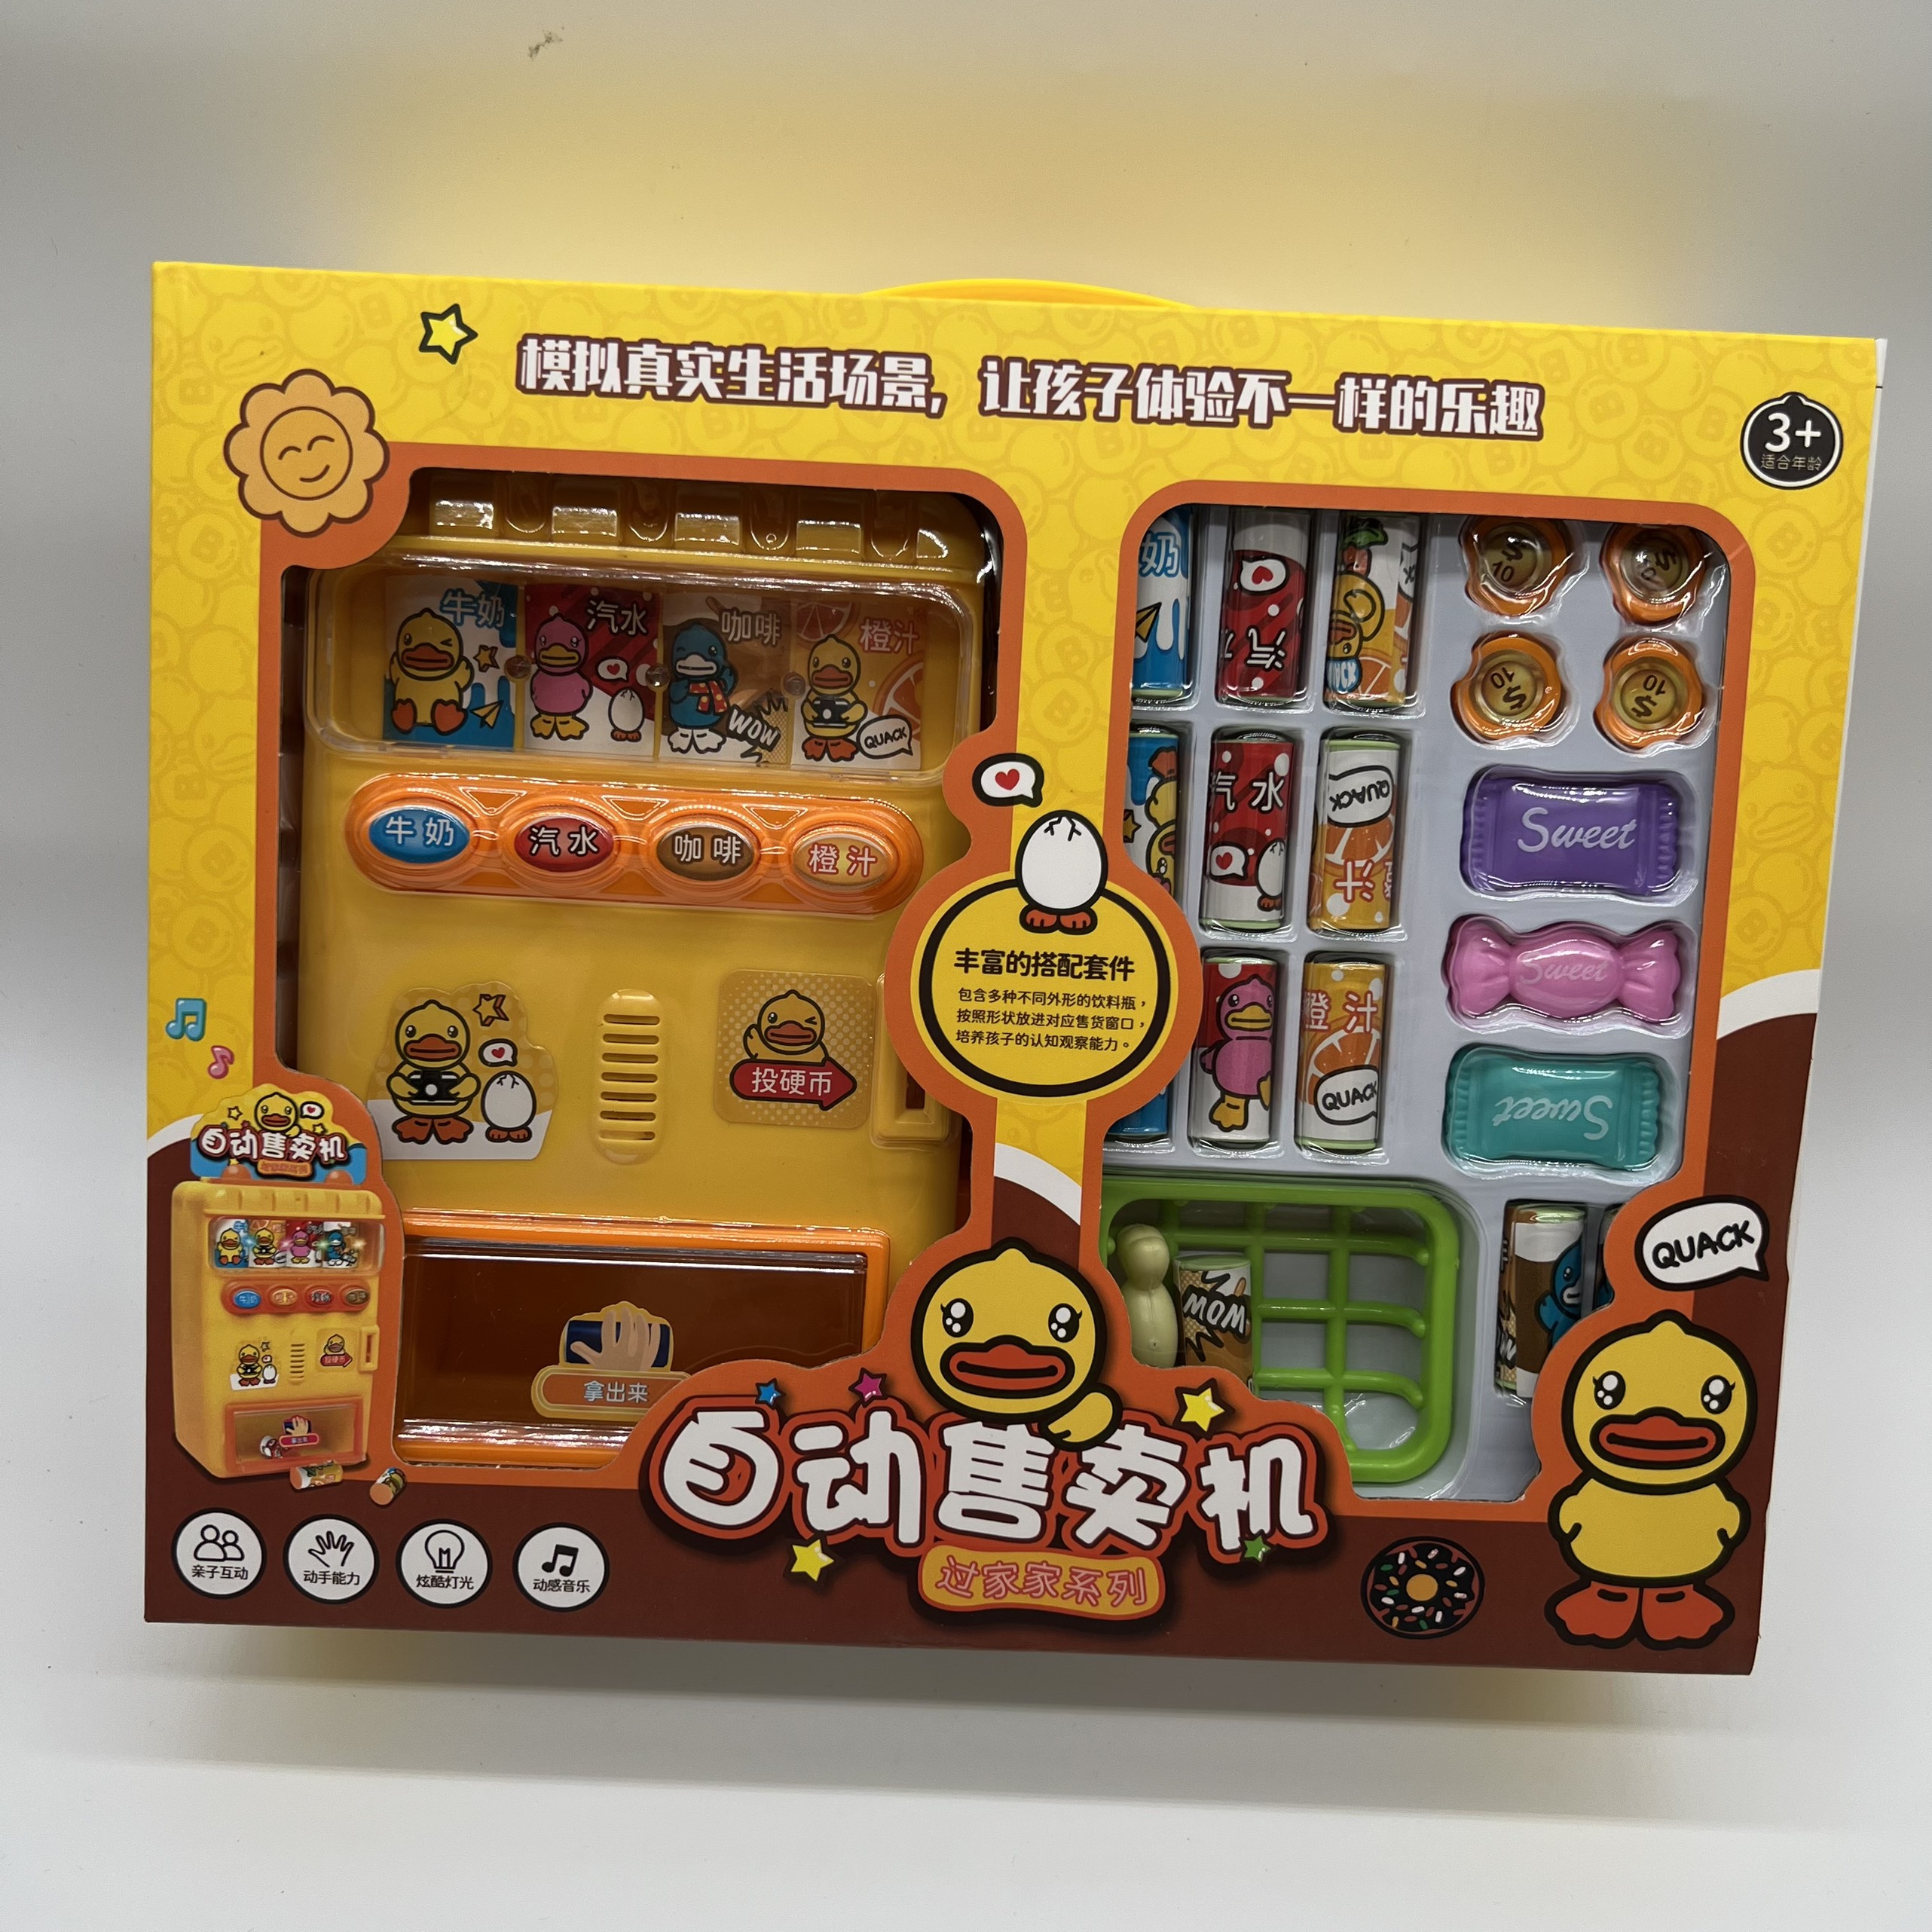 Máy bán nước ngọt tự động màu vàng kèm phụ kiện đồ chơi - Quà tặng hấp dẫn cho bé